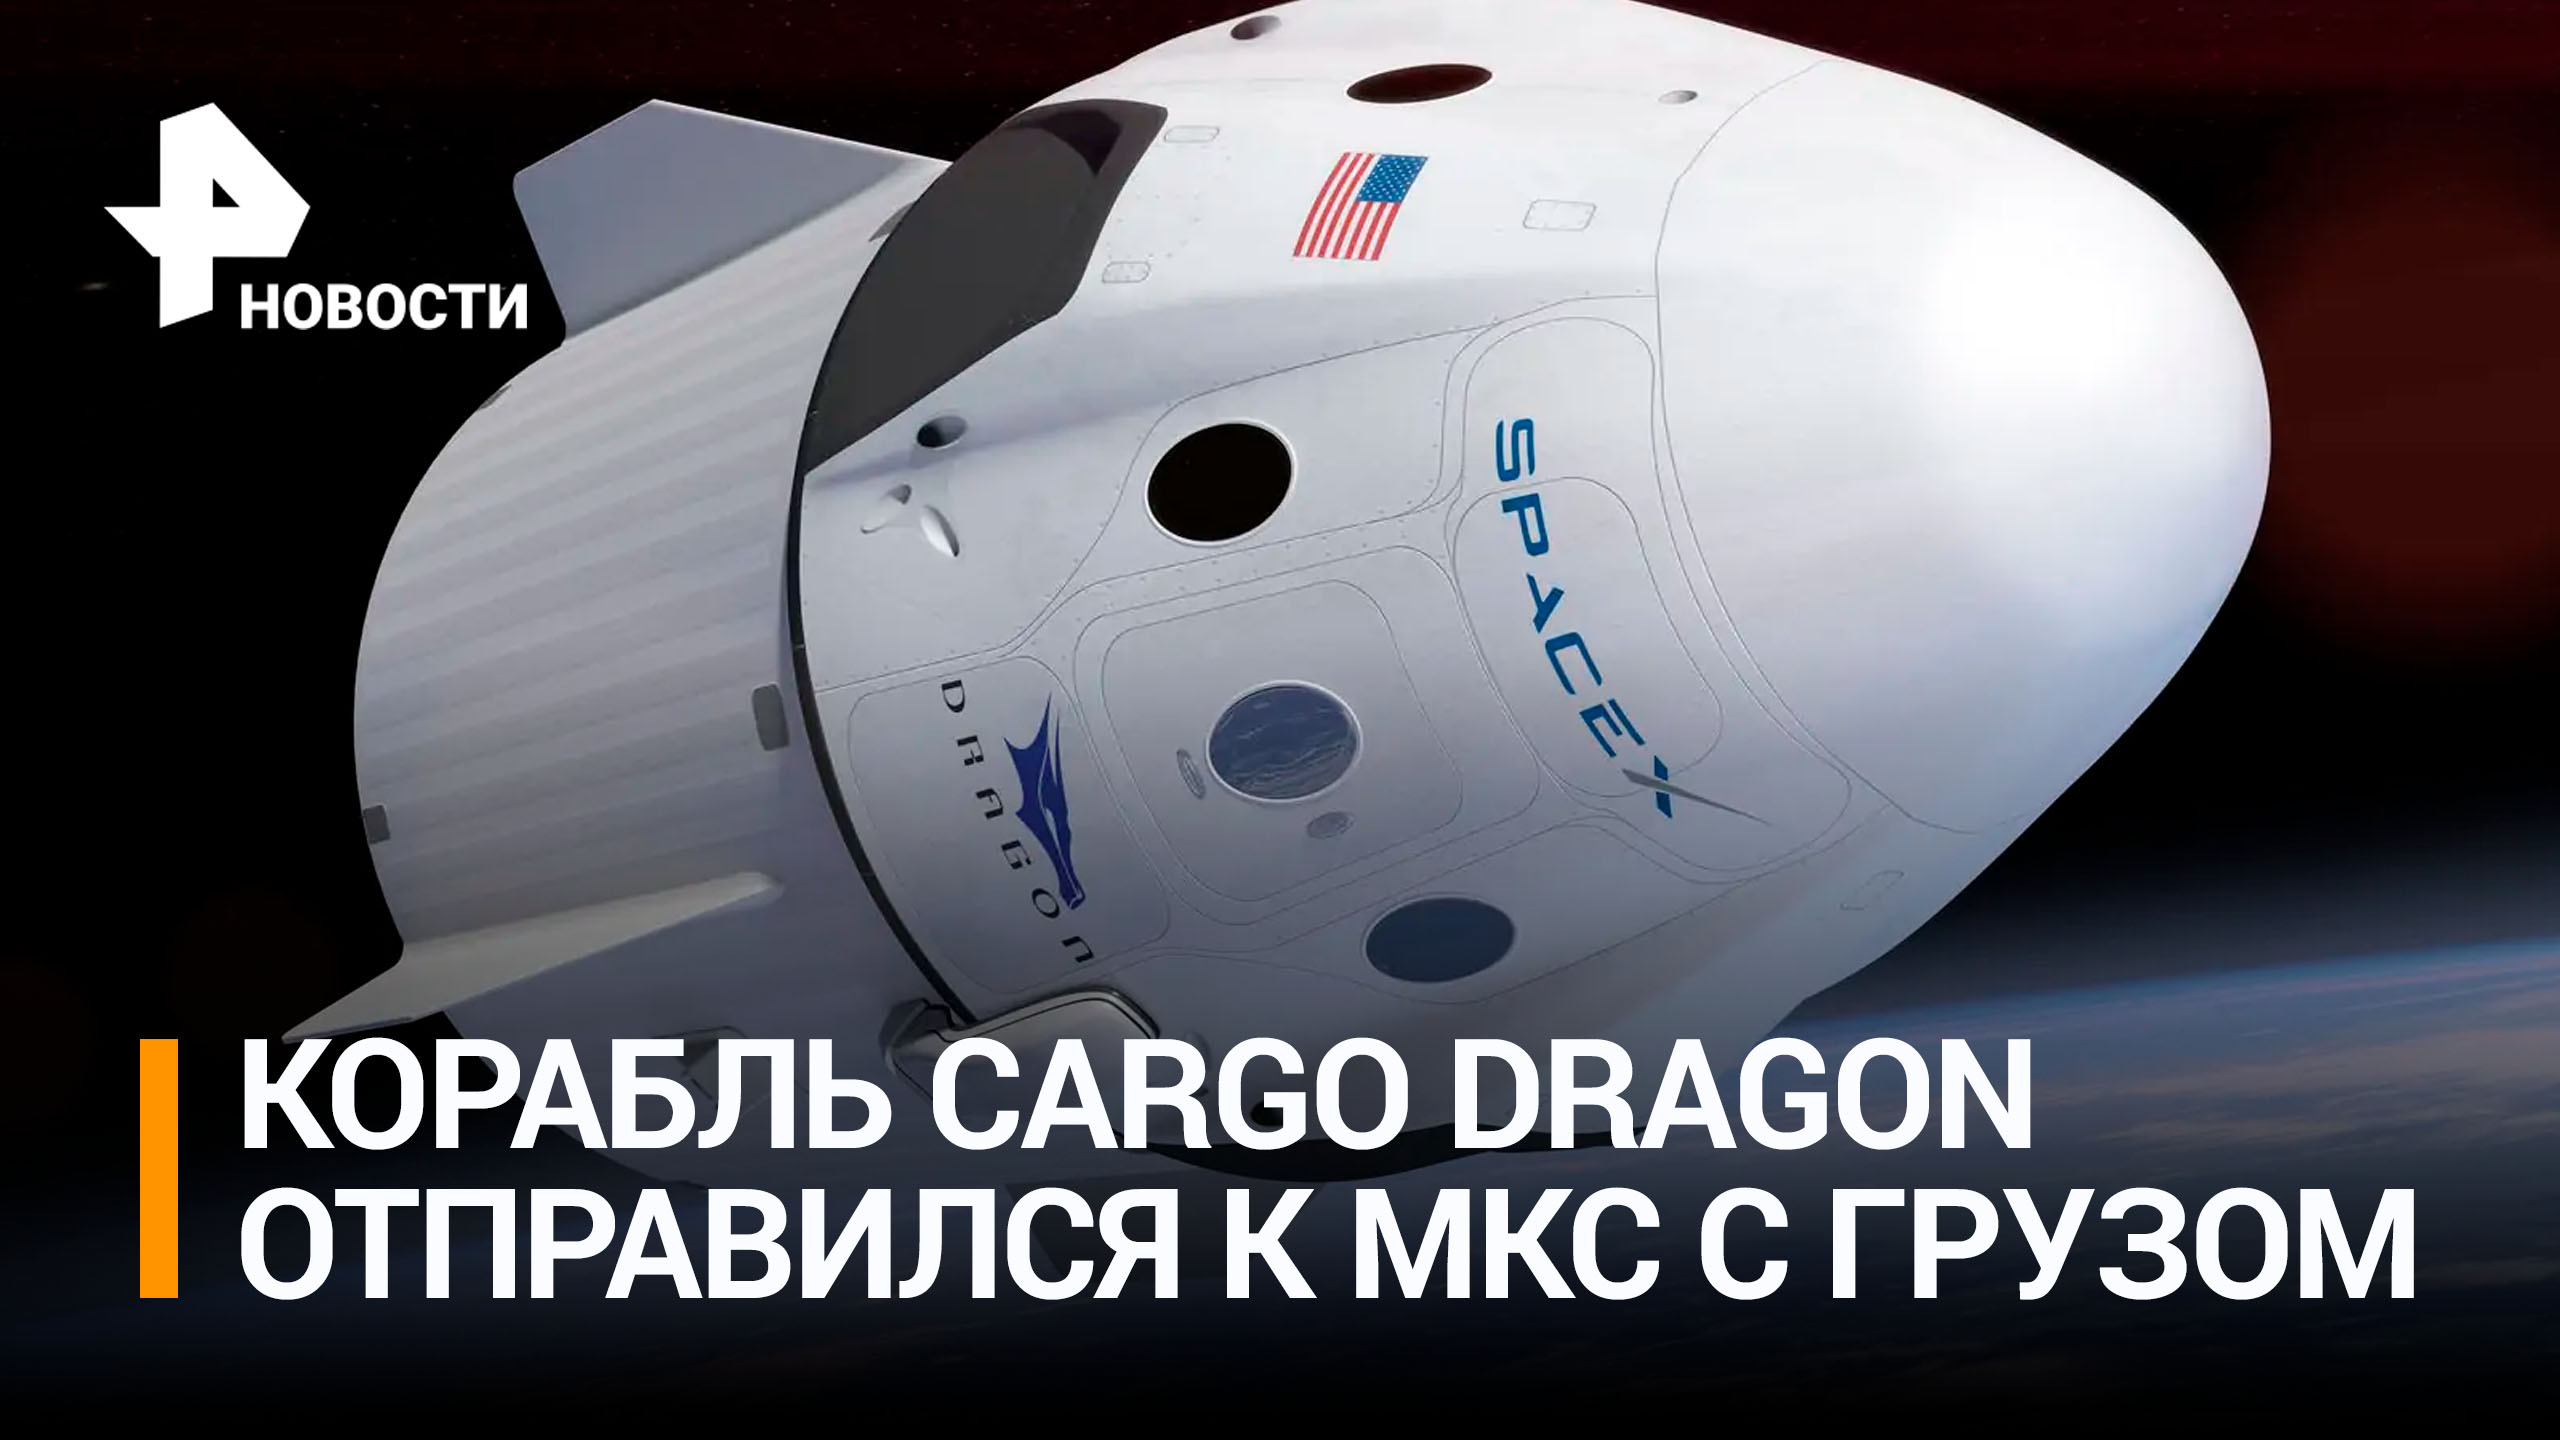 Солнечные батареи и семена томатов: Cargo Dragon с грузом отправился на МКС / РЕН Новости